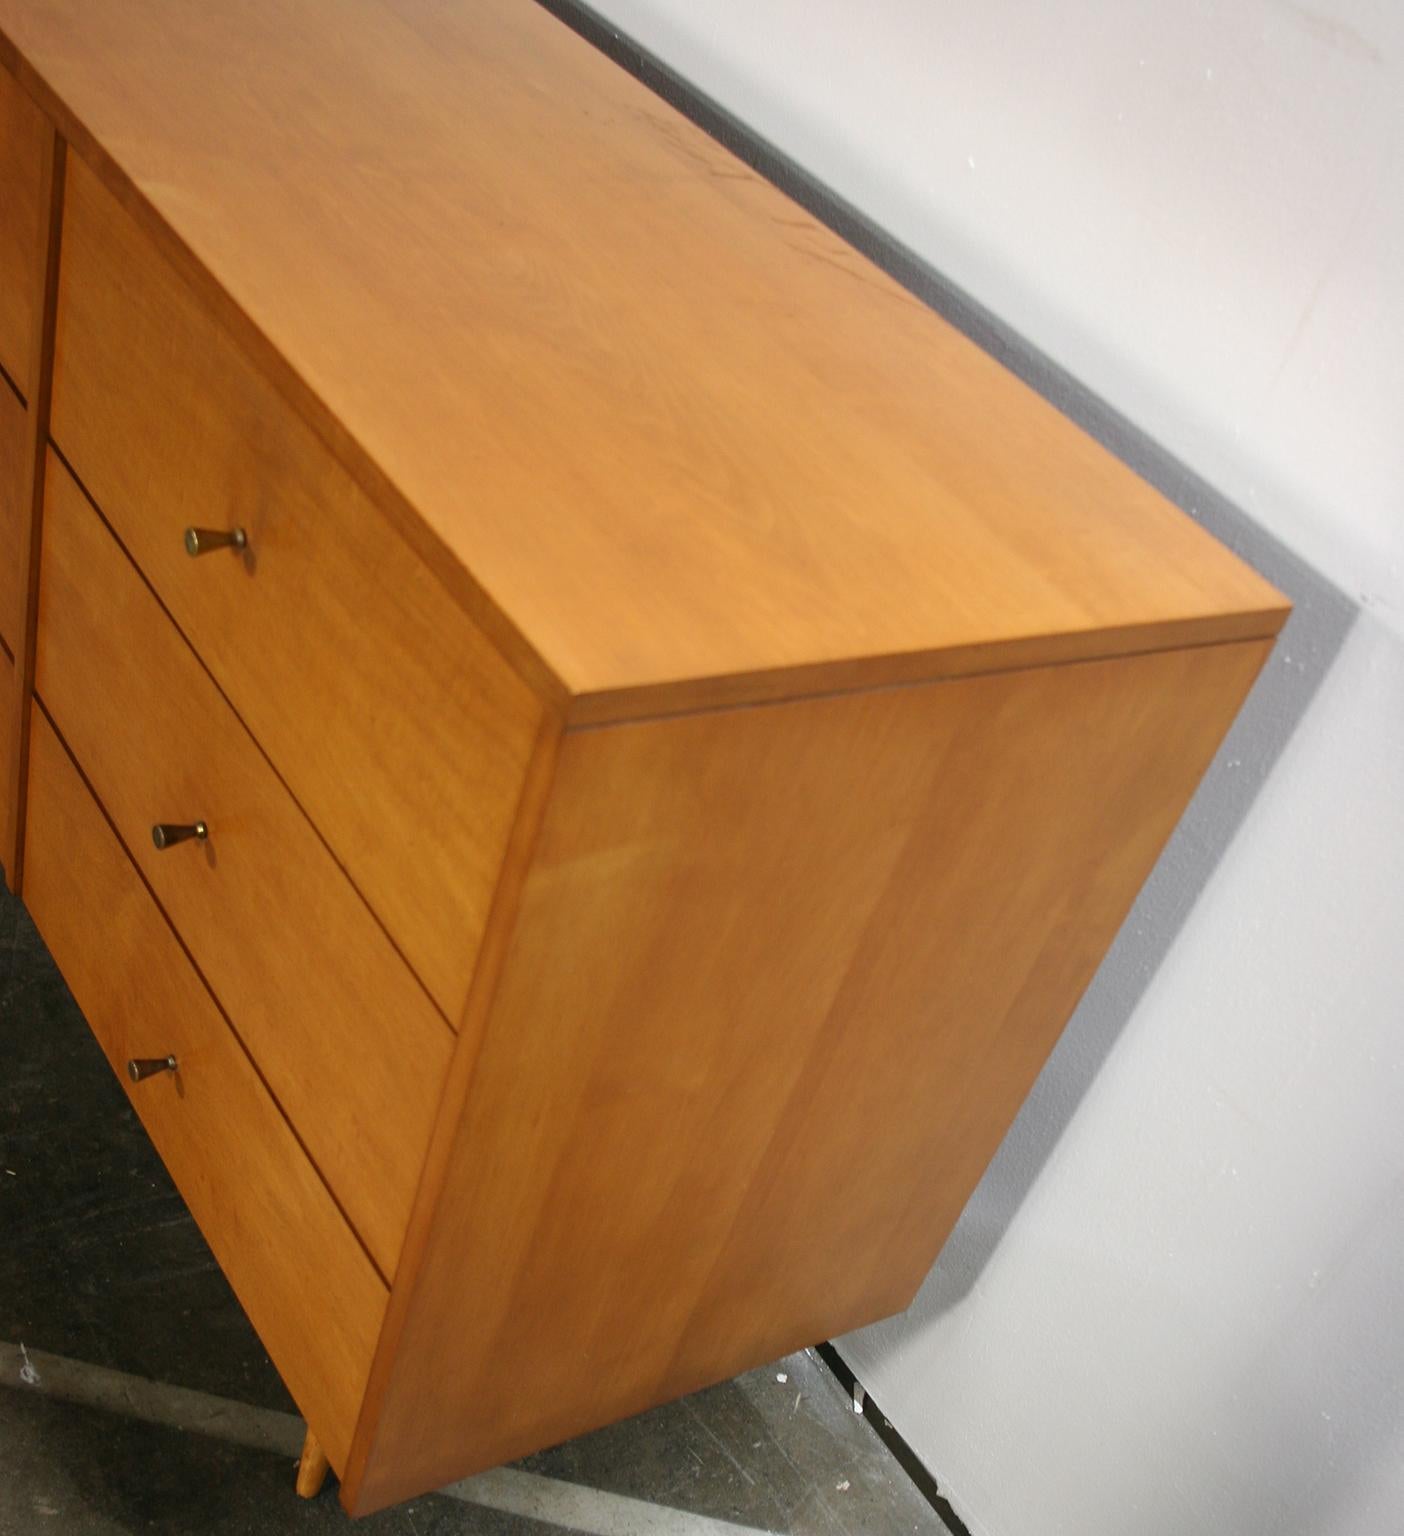 Steel Midcentury Paul McCobb Six-Drawer Dresser Credenza #1509 Blonde Maple Brass